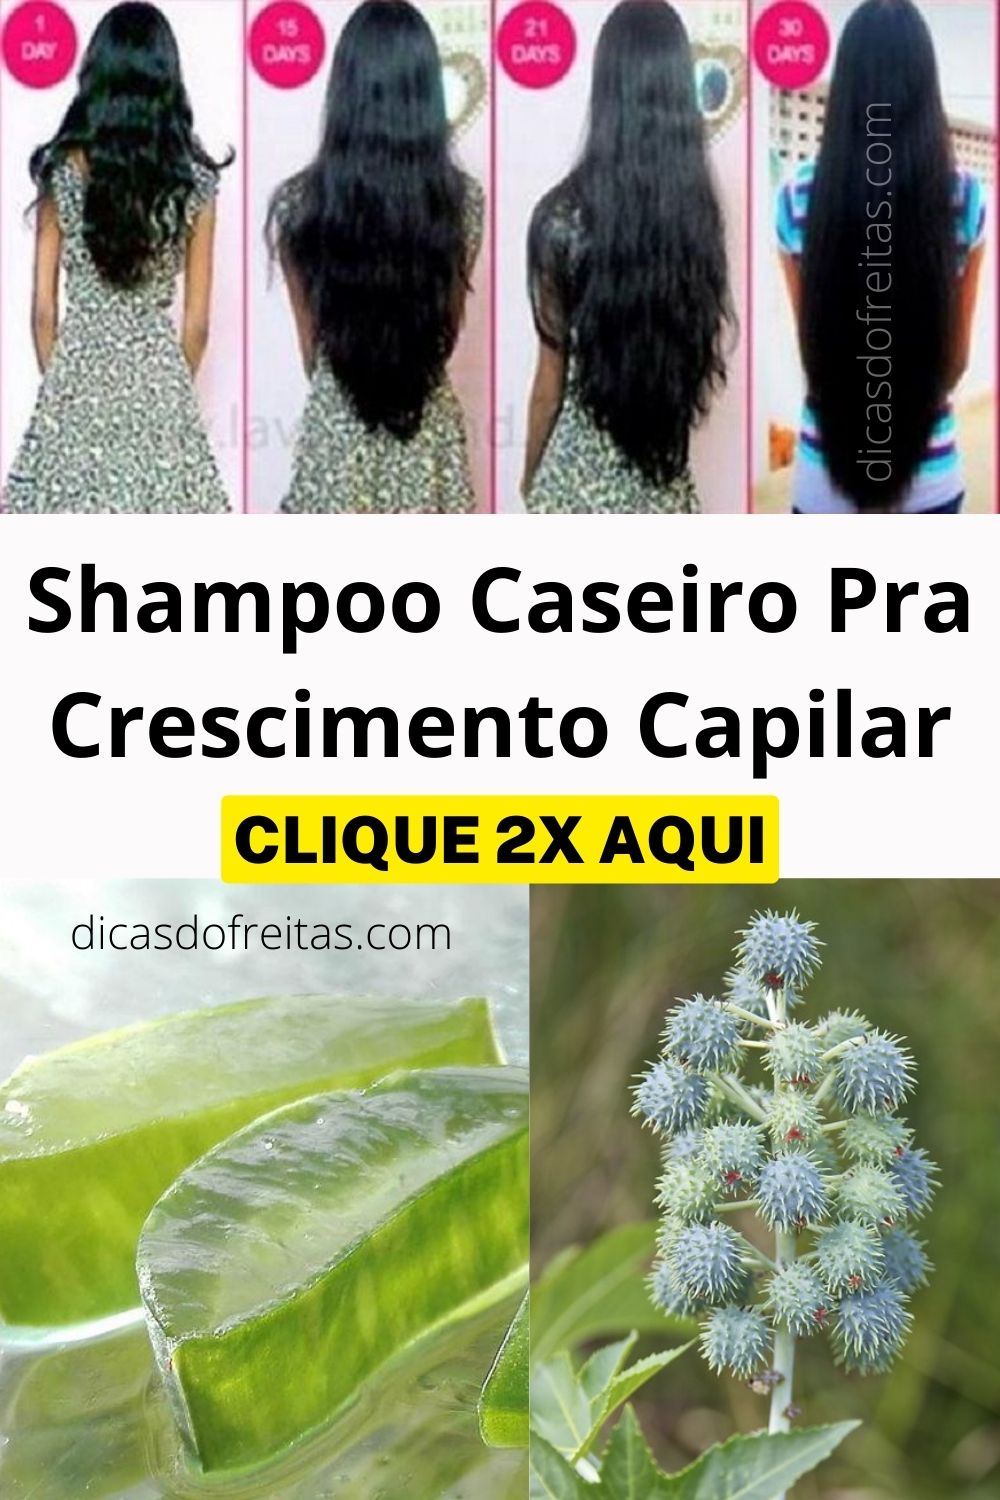 Shampoo caseiro pra crescimento capilar; Crescimento capilar acelerado!